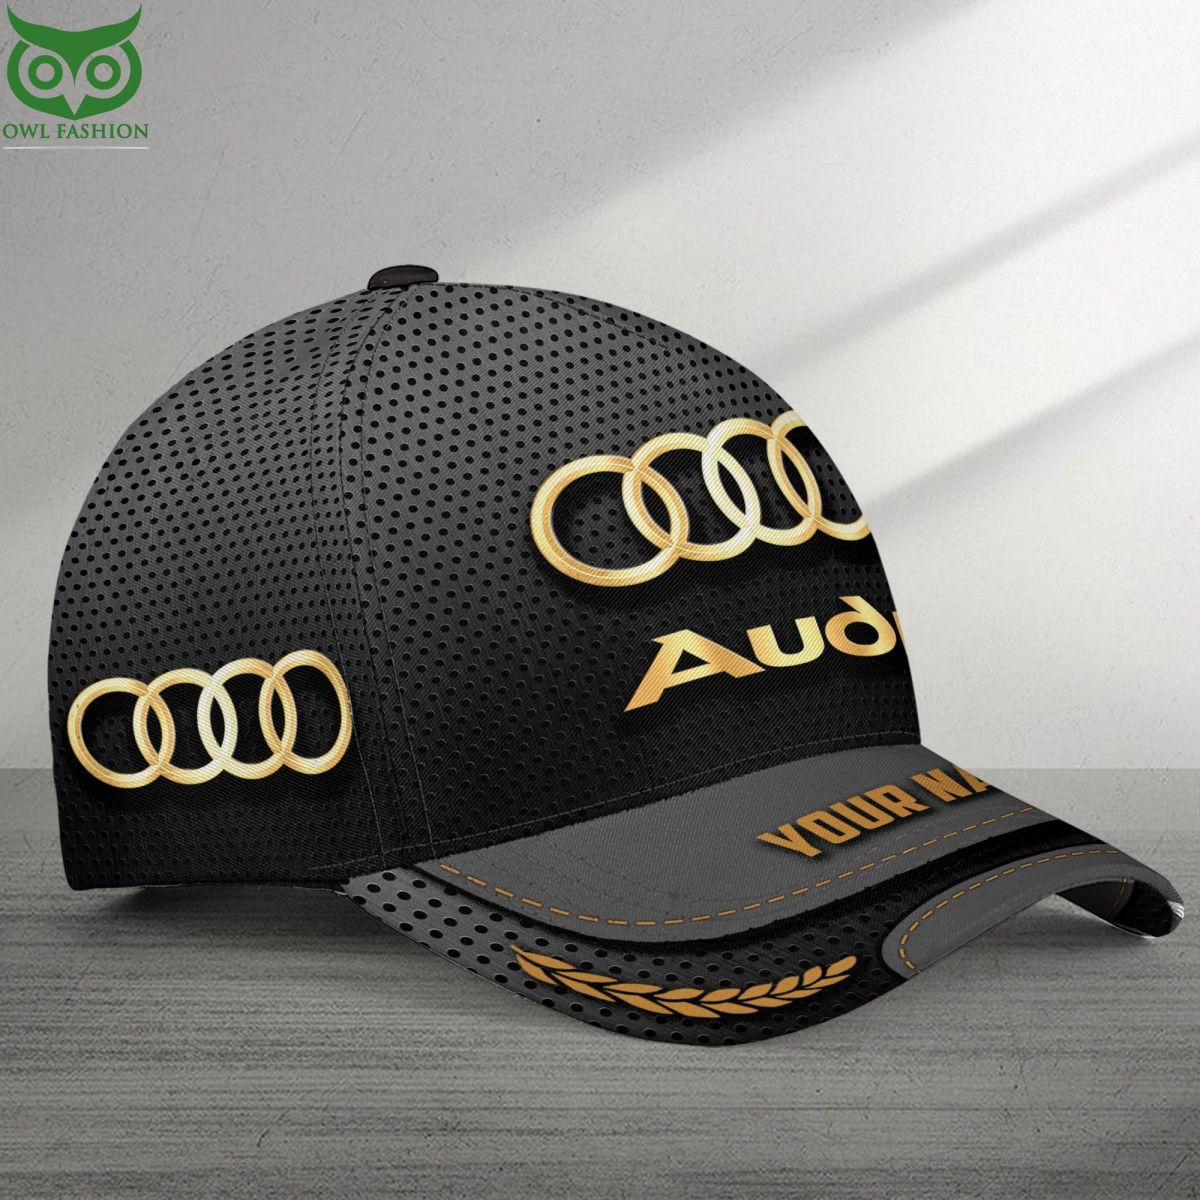 Audi Luxury Car Brand Custom Classic Cap Nice Pic